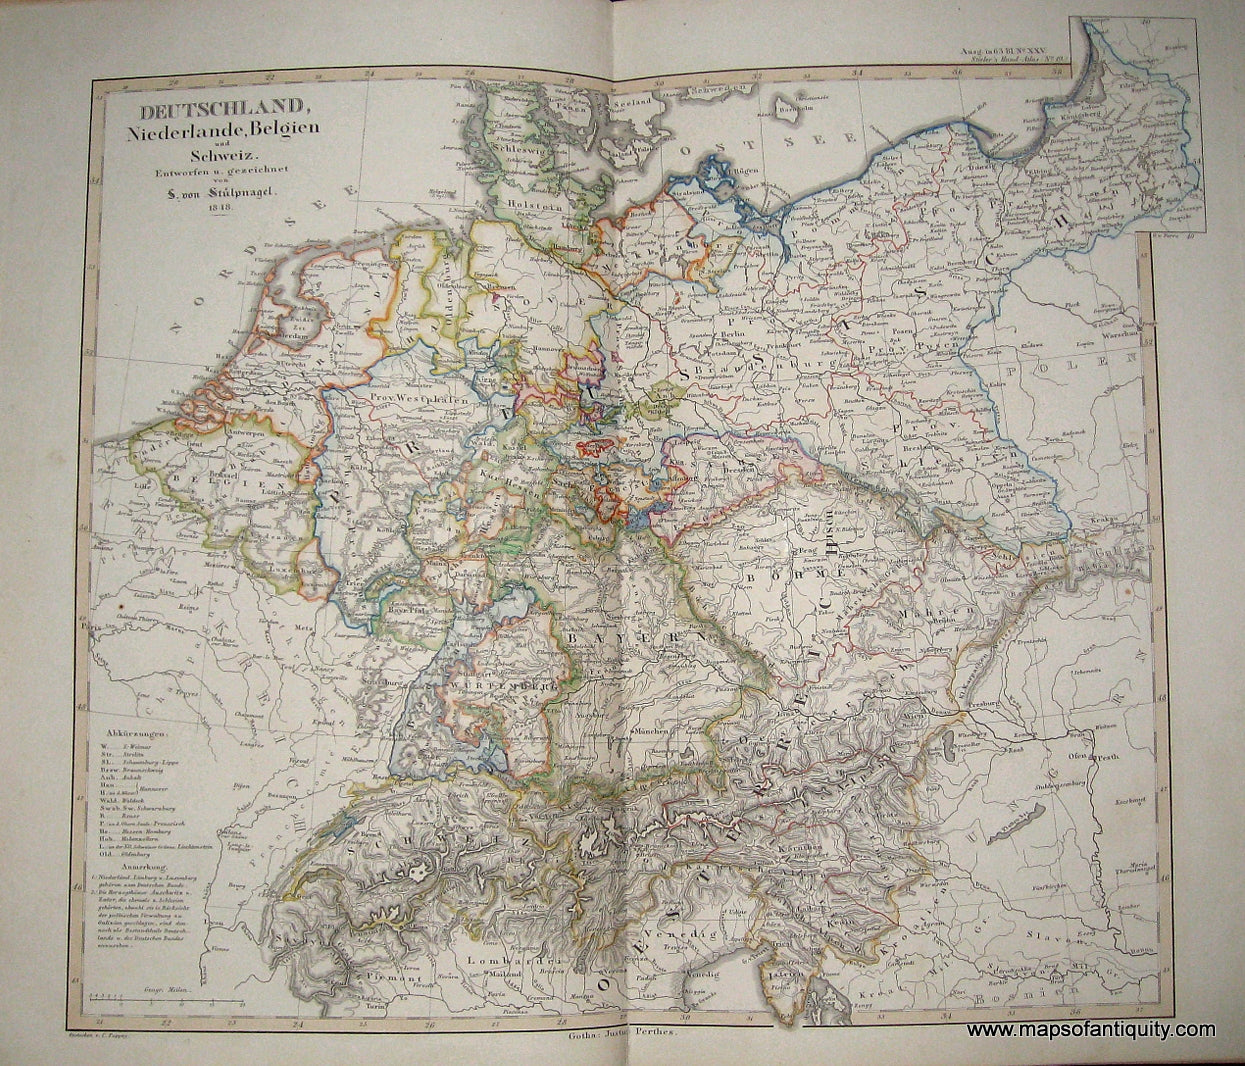 Antique-Hand-Colored-Map-Germany-Netherlands-Belgium-and-Switzerland--Deutschland-Niederlande-Belgien-und-Schweiz--Germany-circa-1848-Stieler-Maps-Of-Antiquity